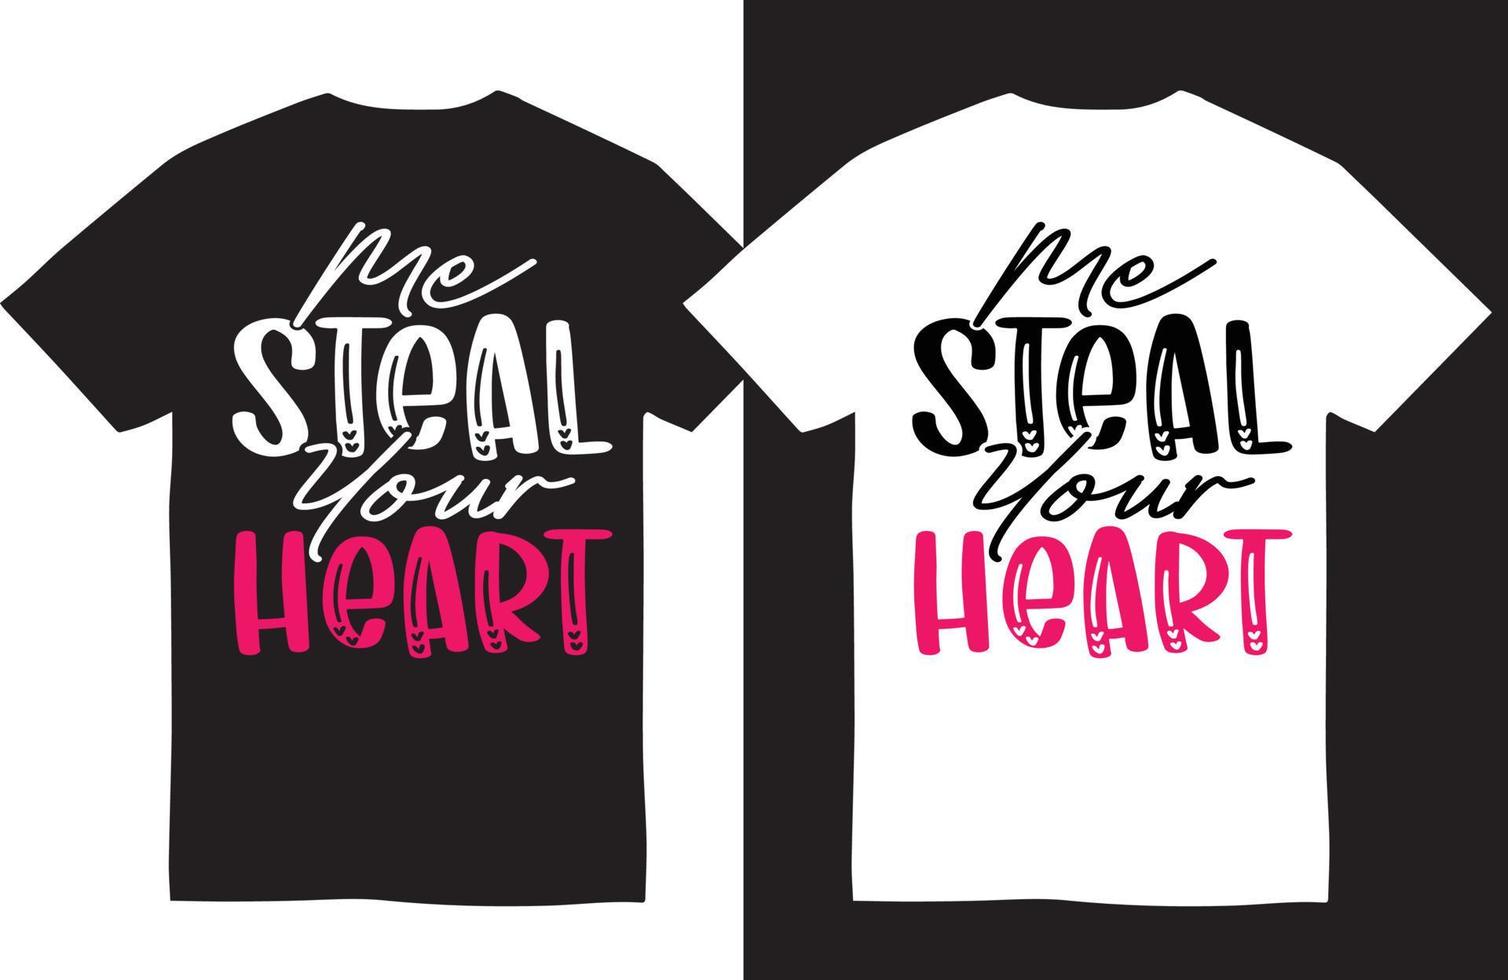 Valentinstag T-Shirt design.me stehlen dein Herz vektor